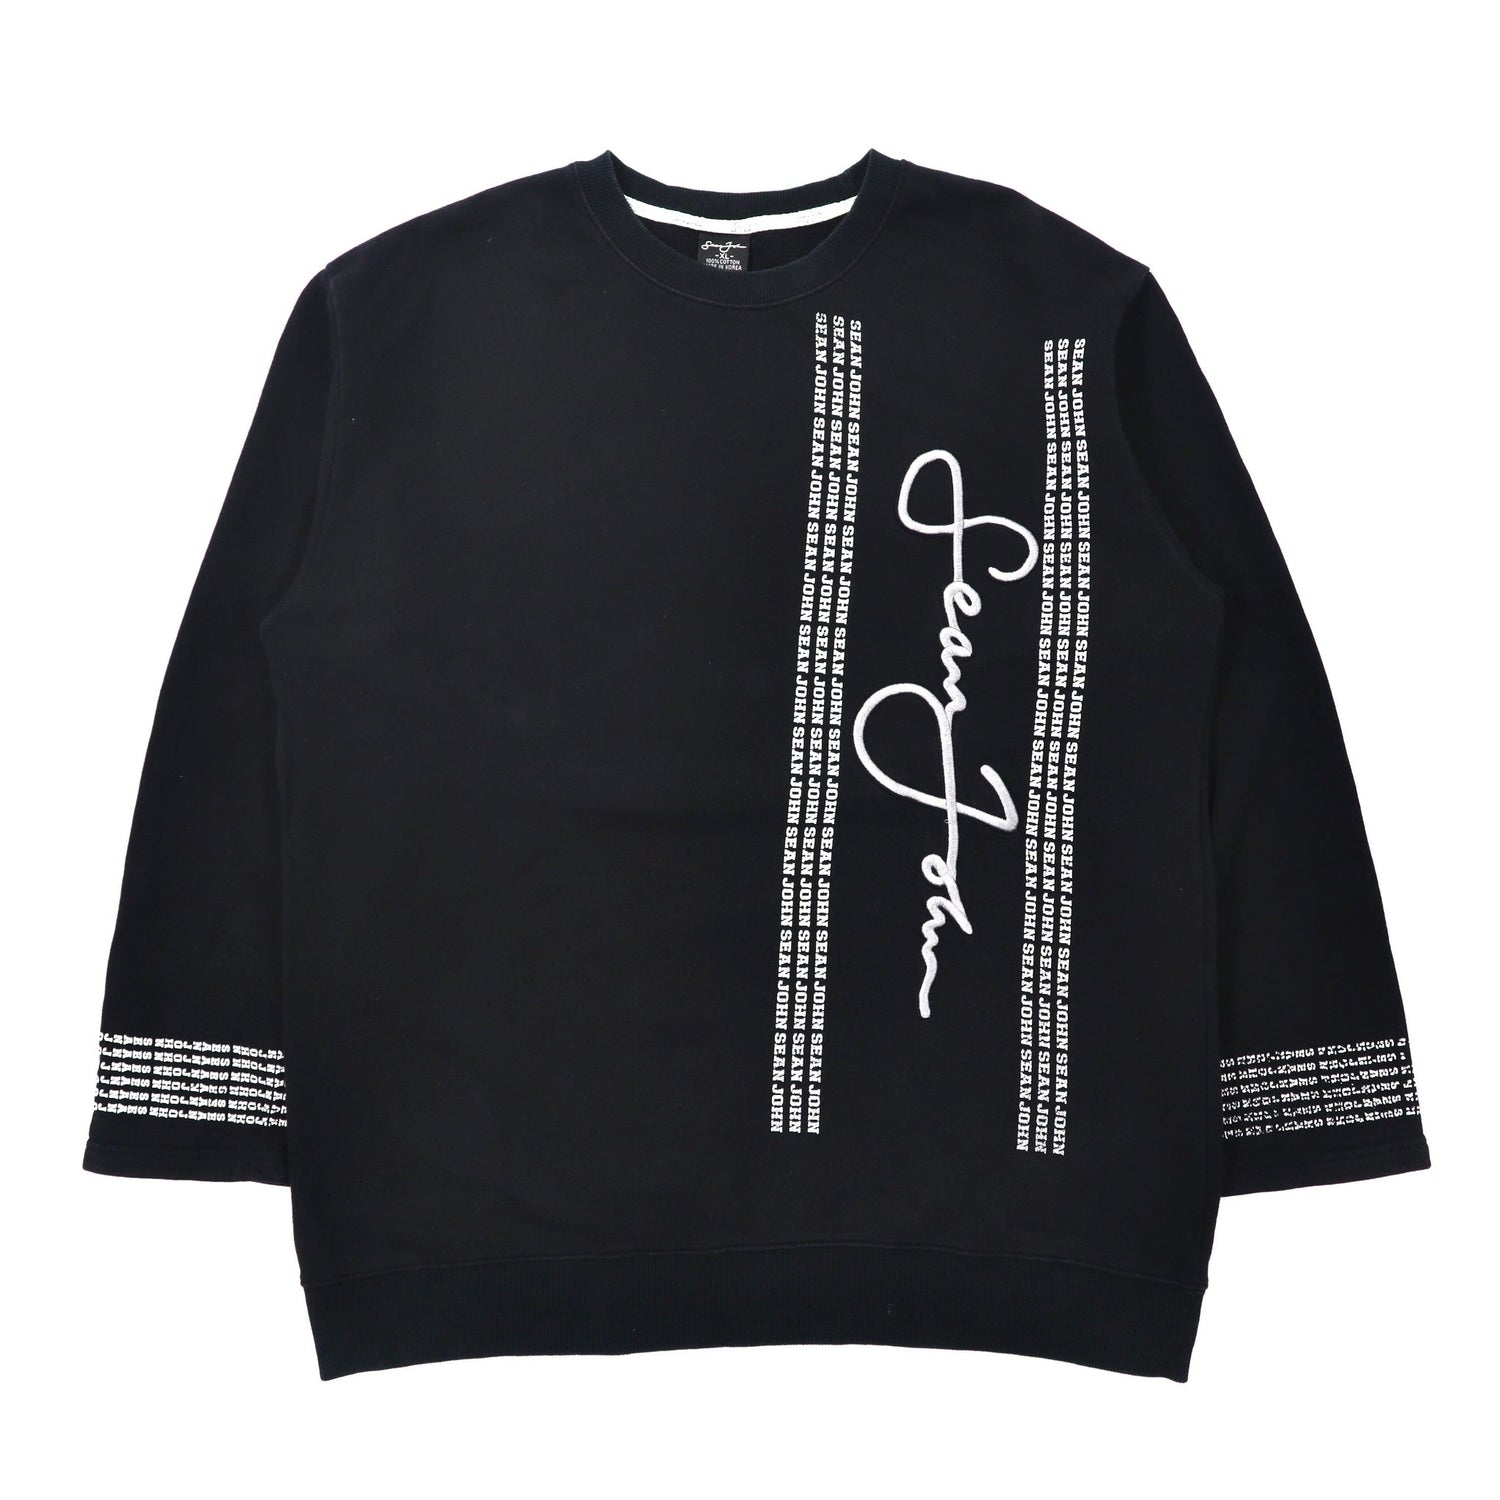 Sean John Big Size Sweatshirt XL Black Cotton Logo 90s